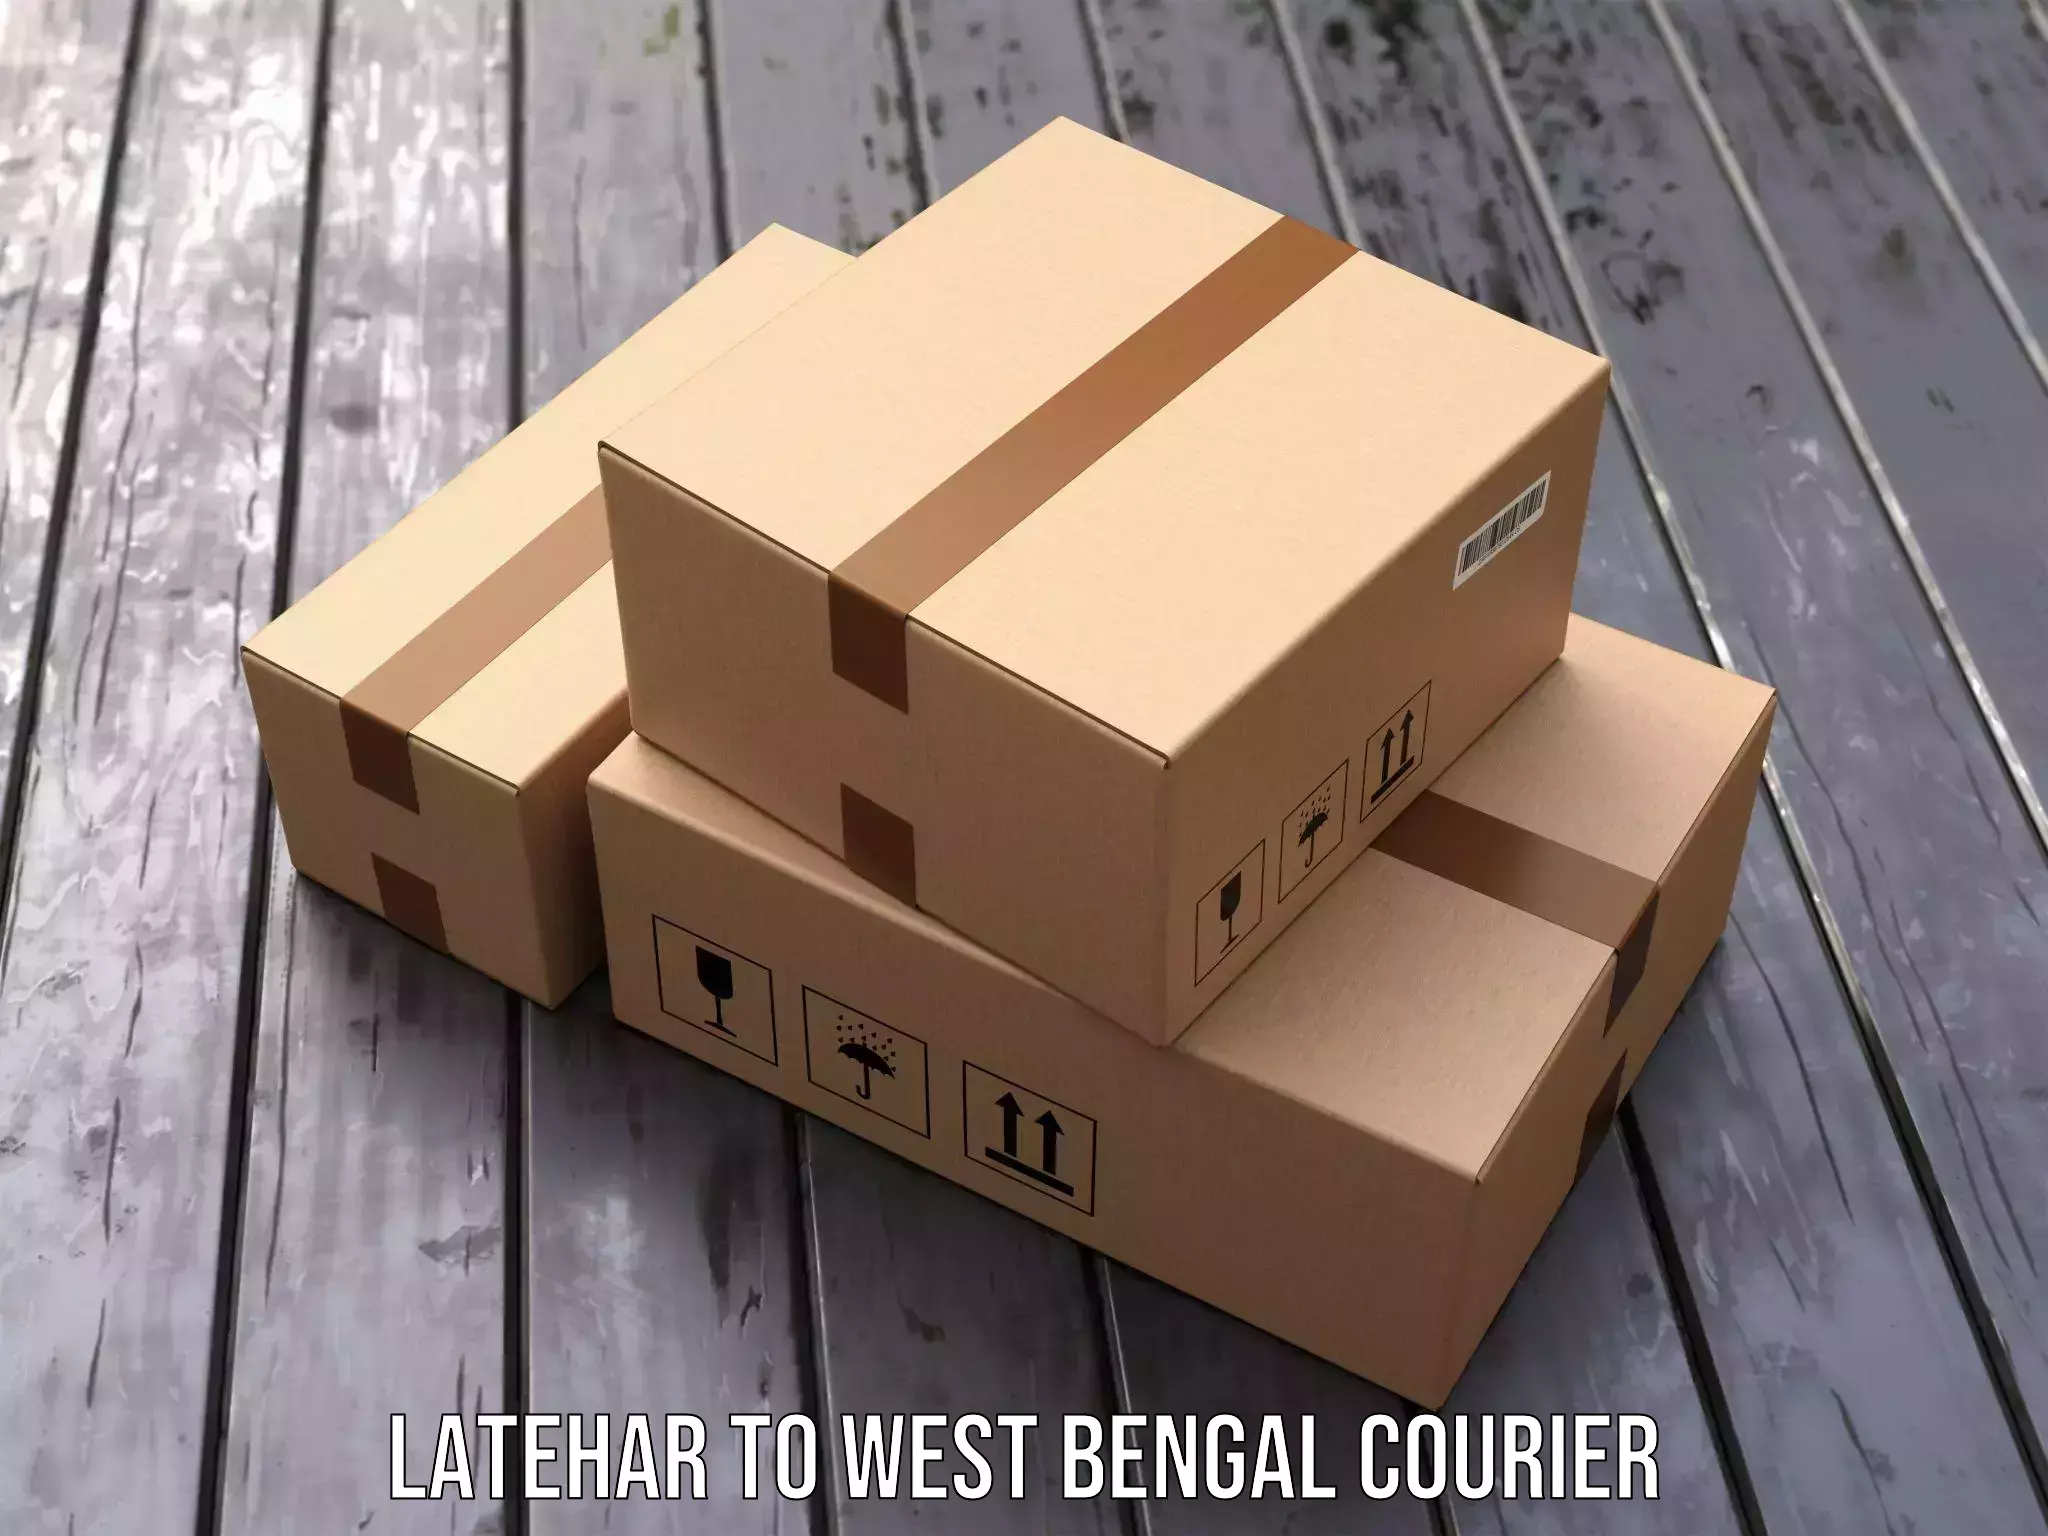 Professional parcel services Latehar to Kaliachak